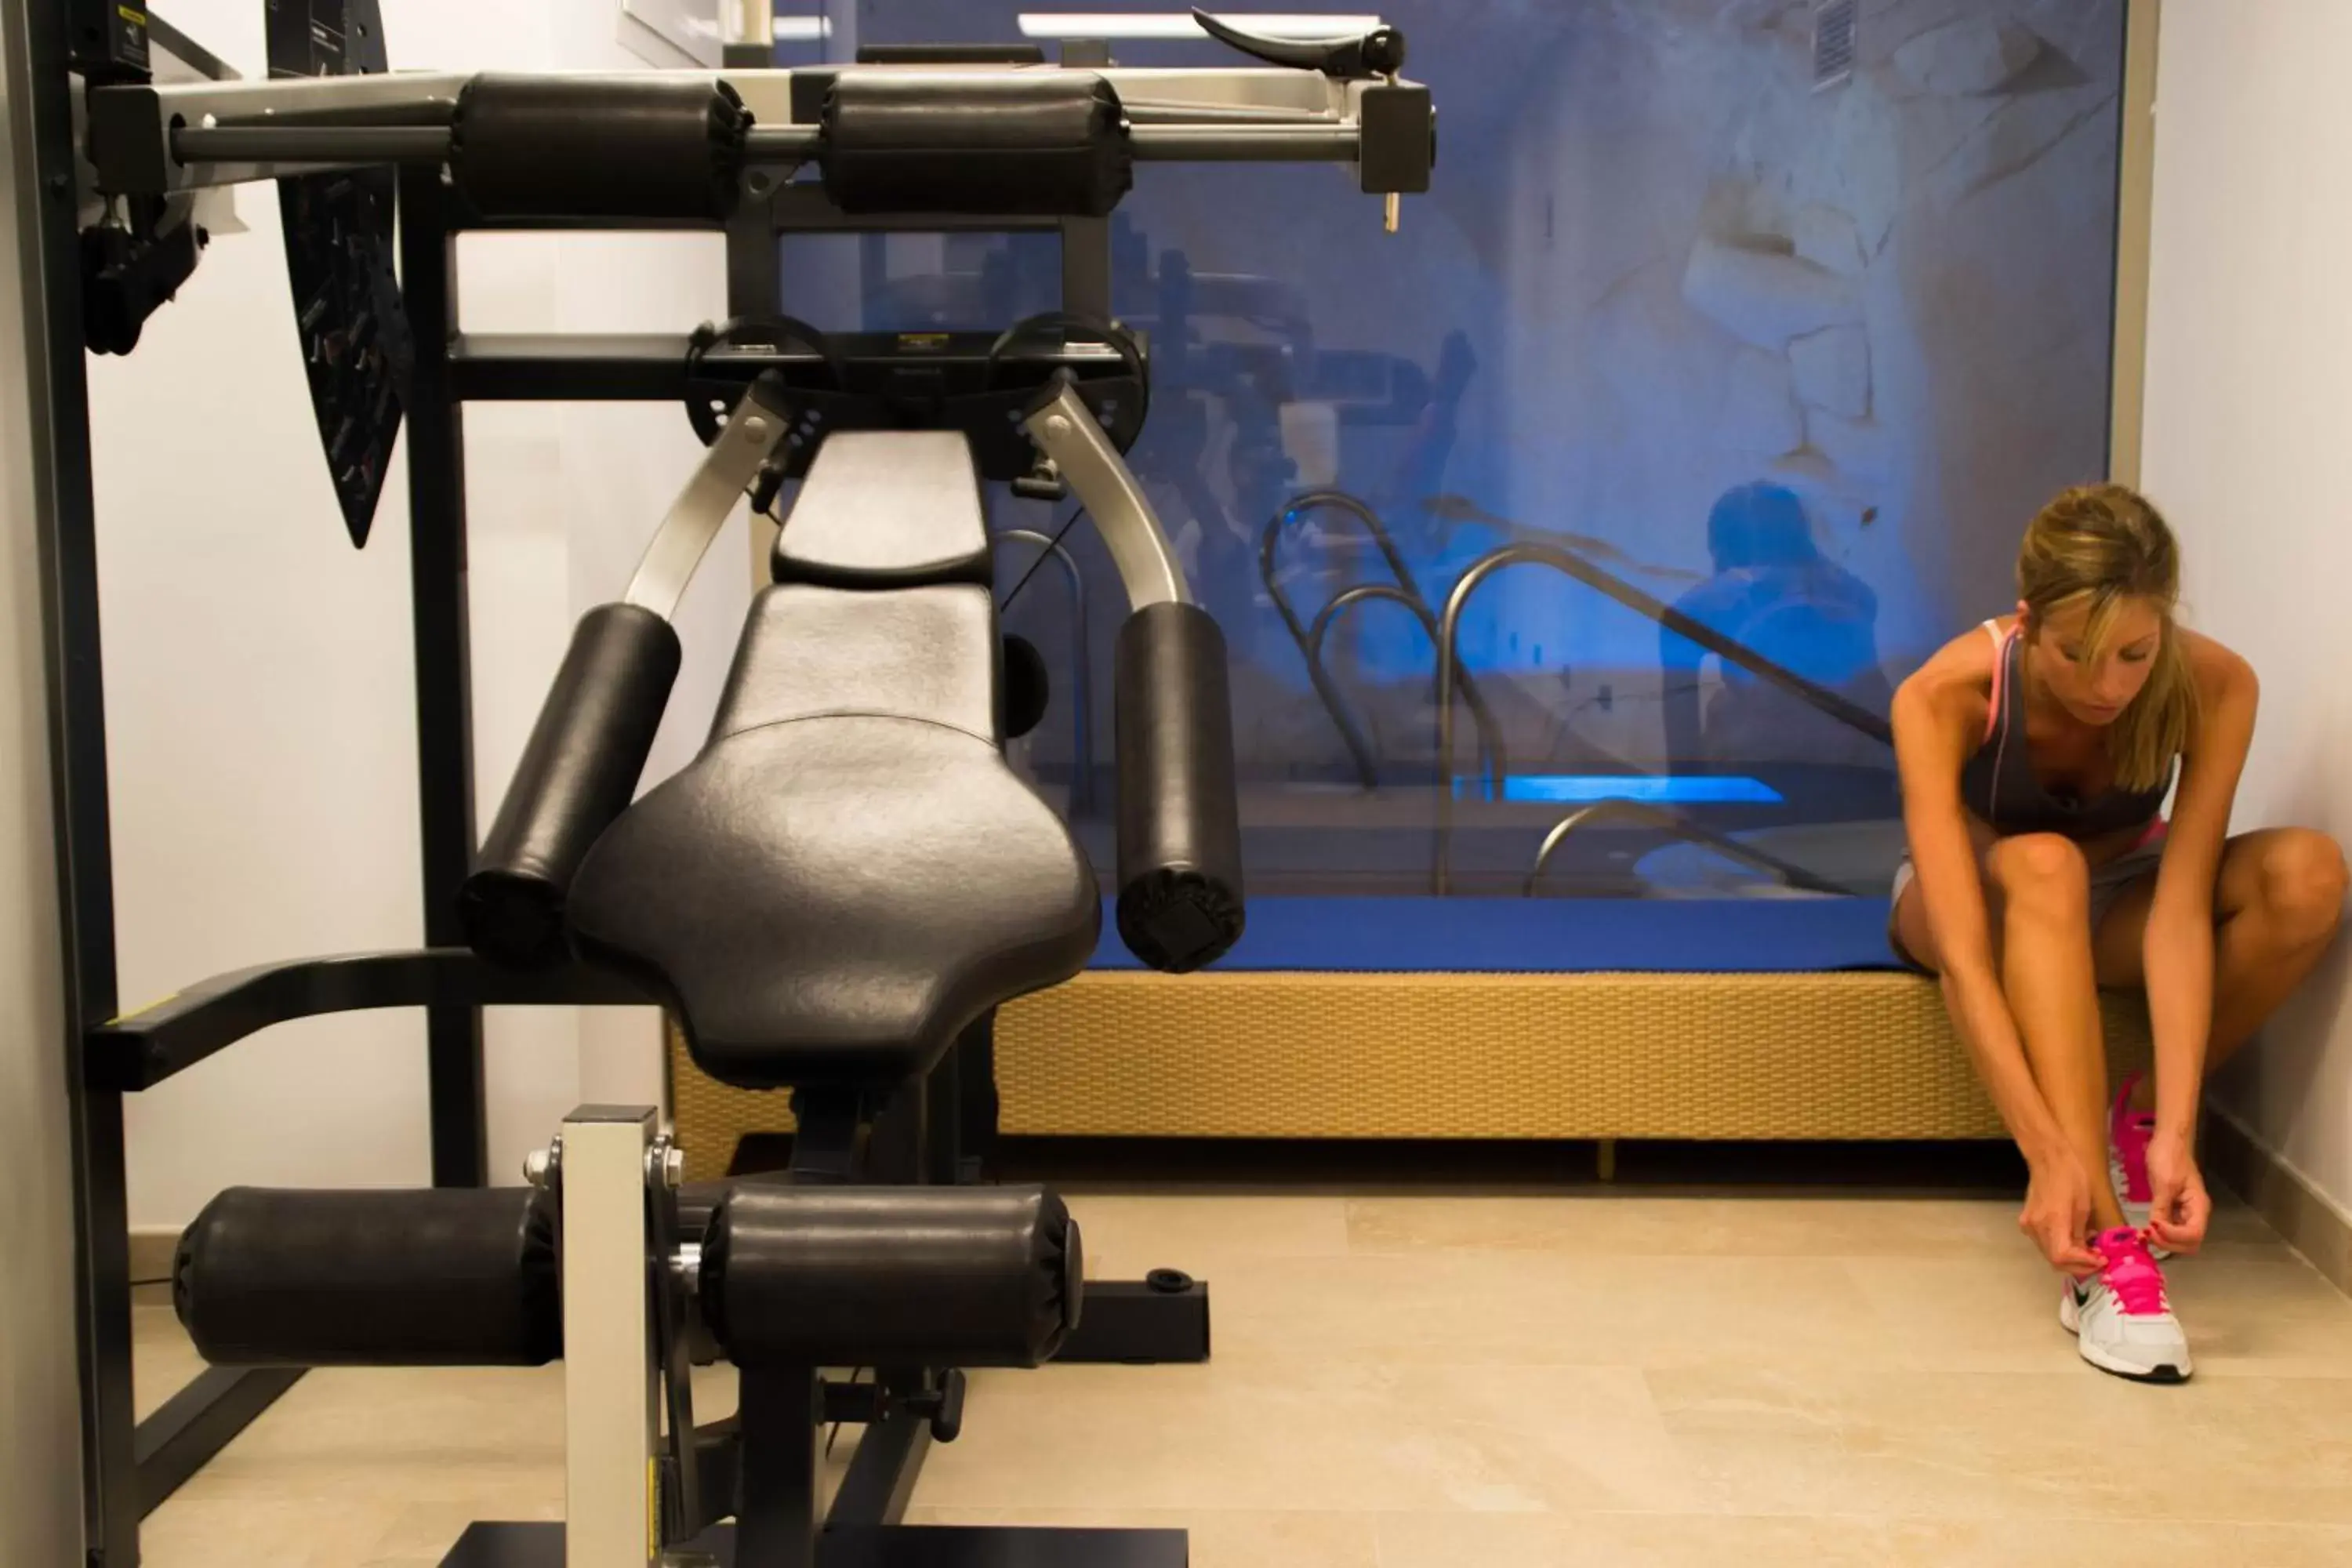 Fitness centre/facilities, Fitness Center/Facilities in Hotel La Fonda